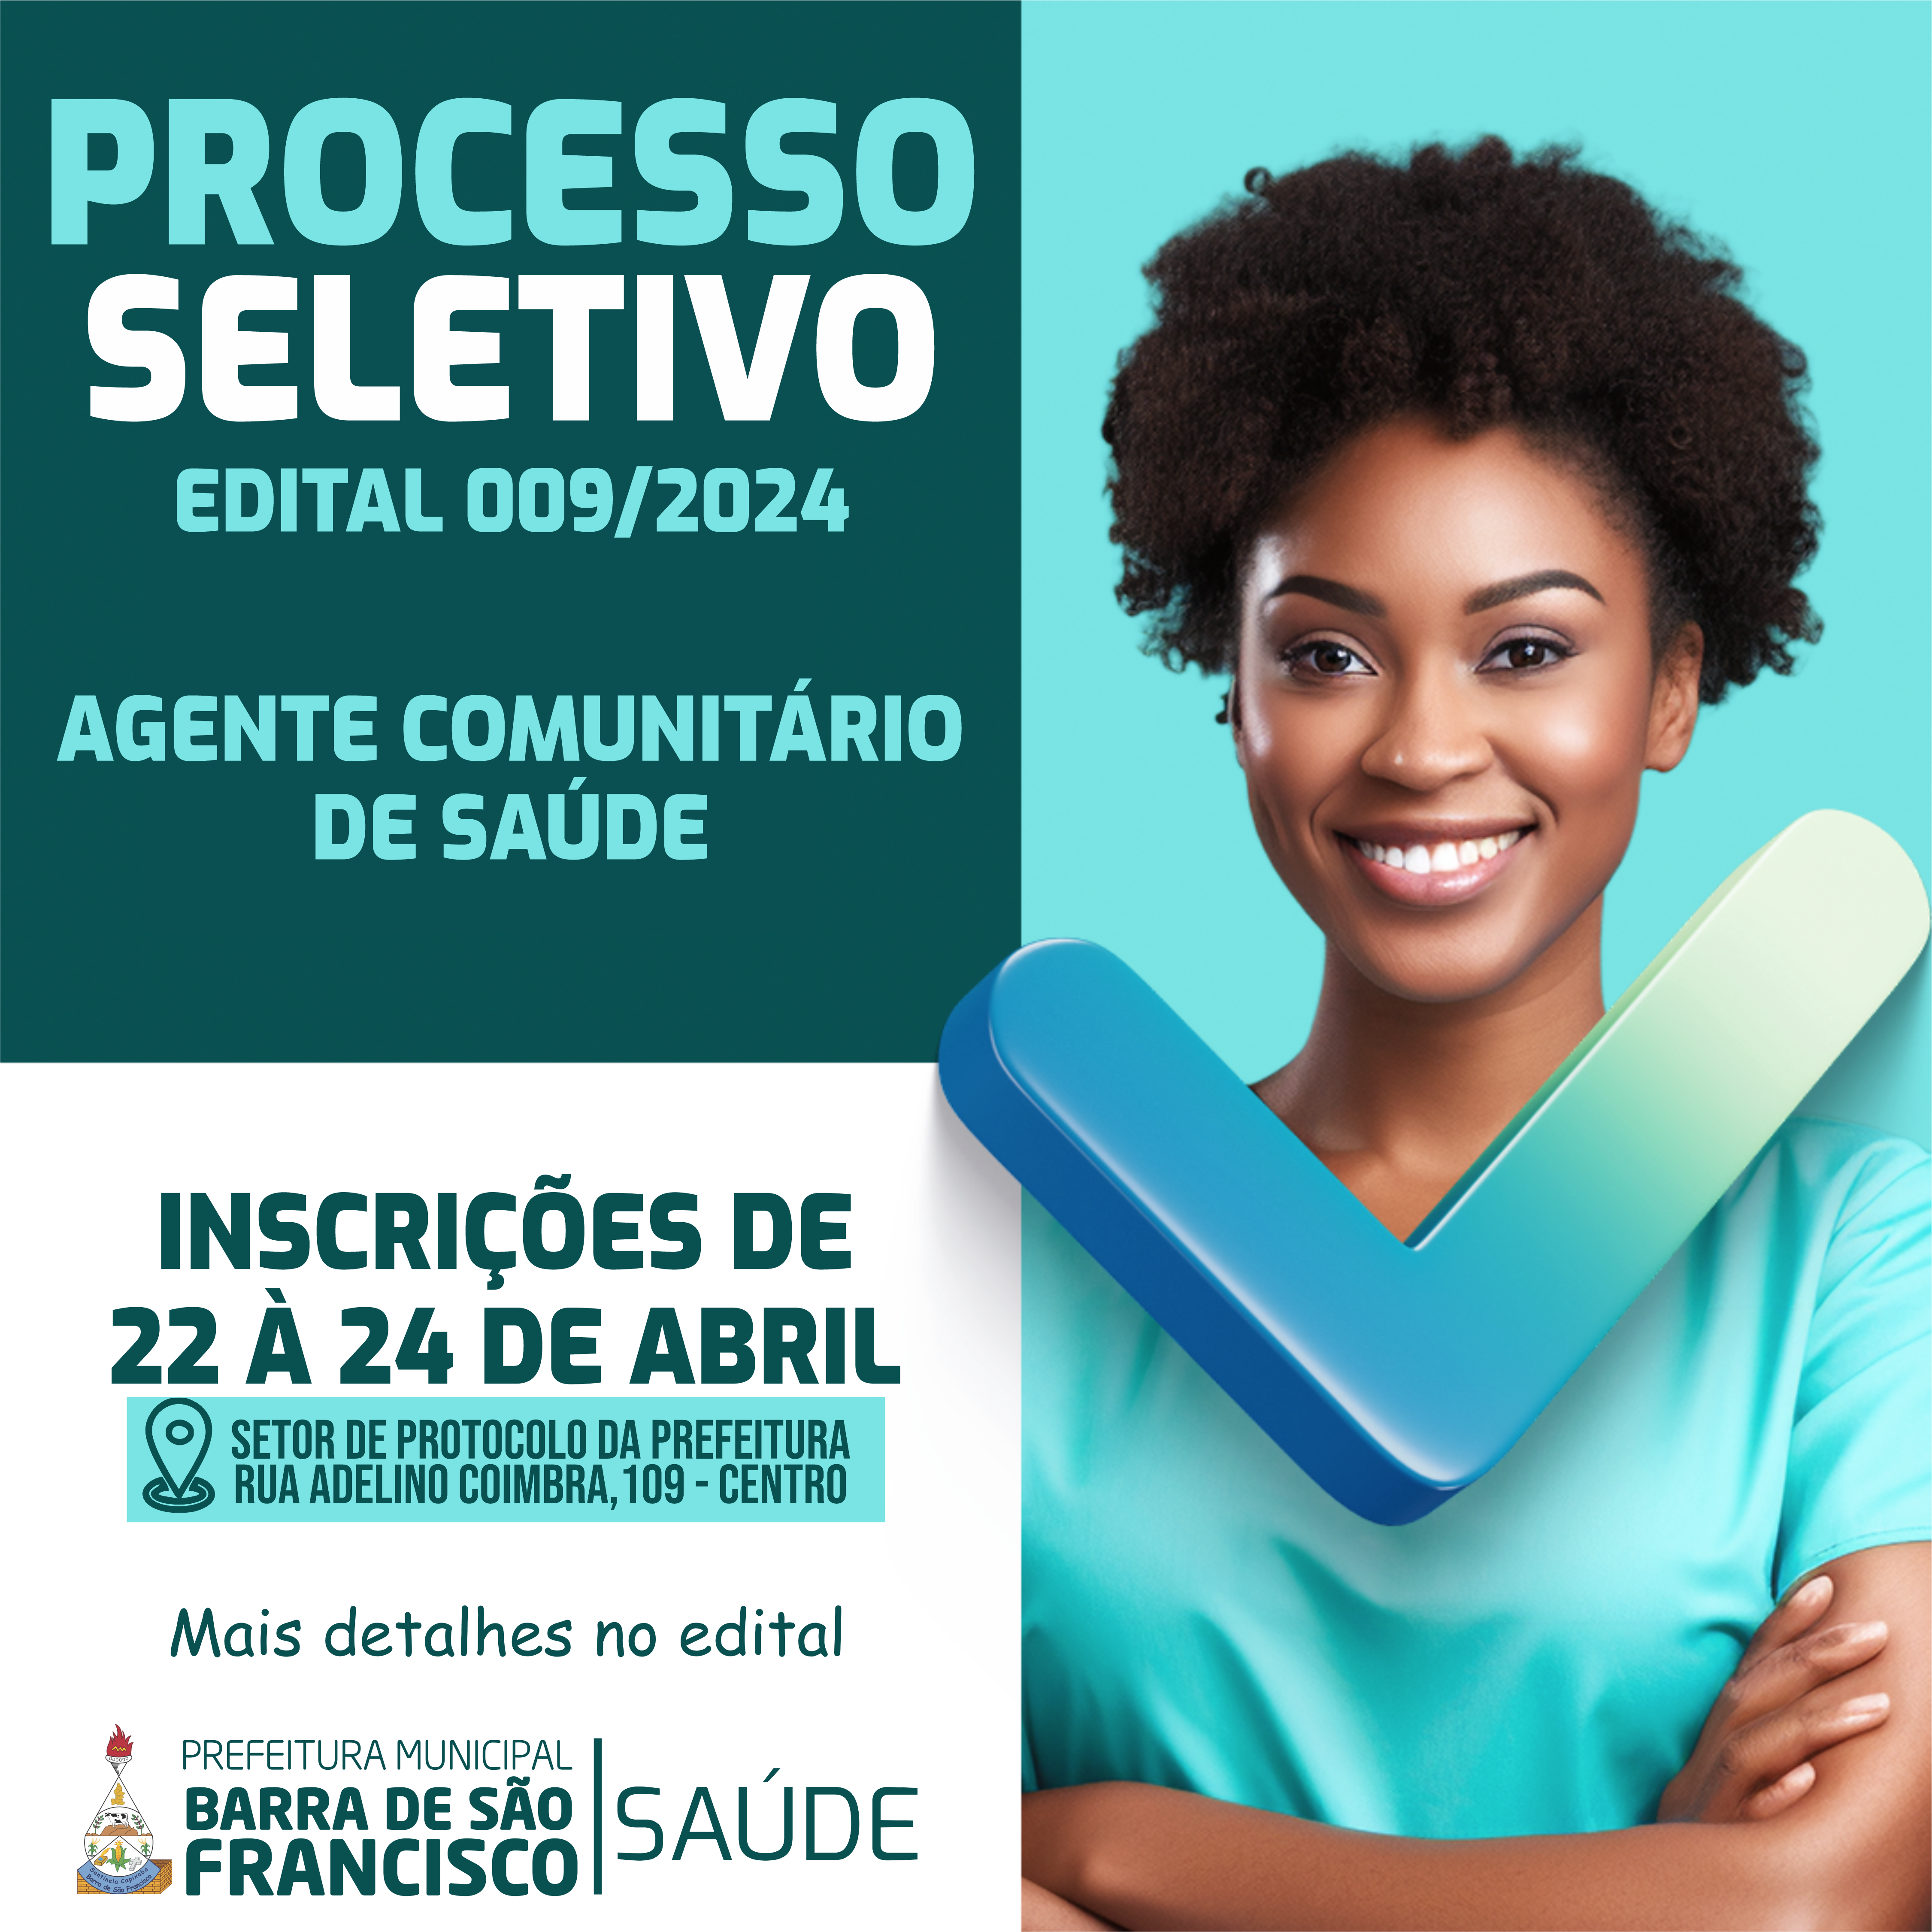 EDITAL DE PROCESSO SELETIVO PÚBLICO Nº. 009 - AGENTE COMUNITÁRIO DE SAÚDE